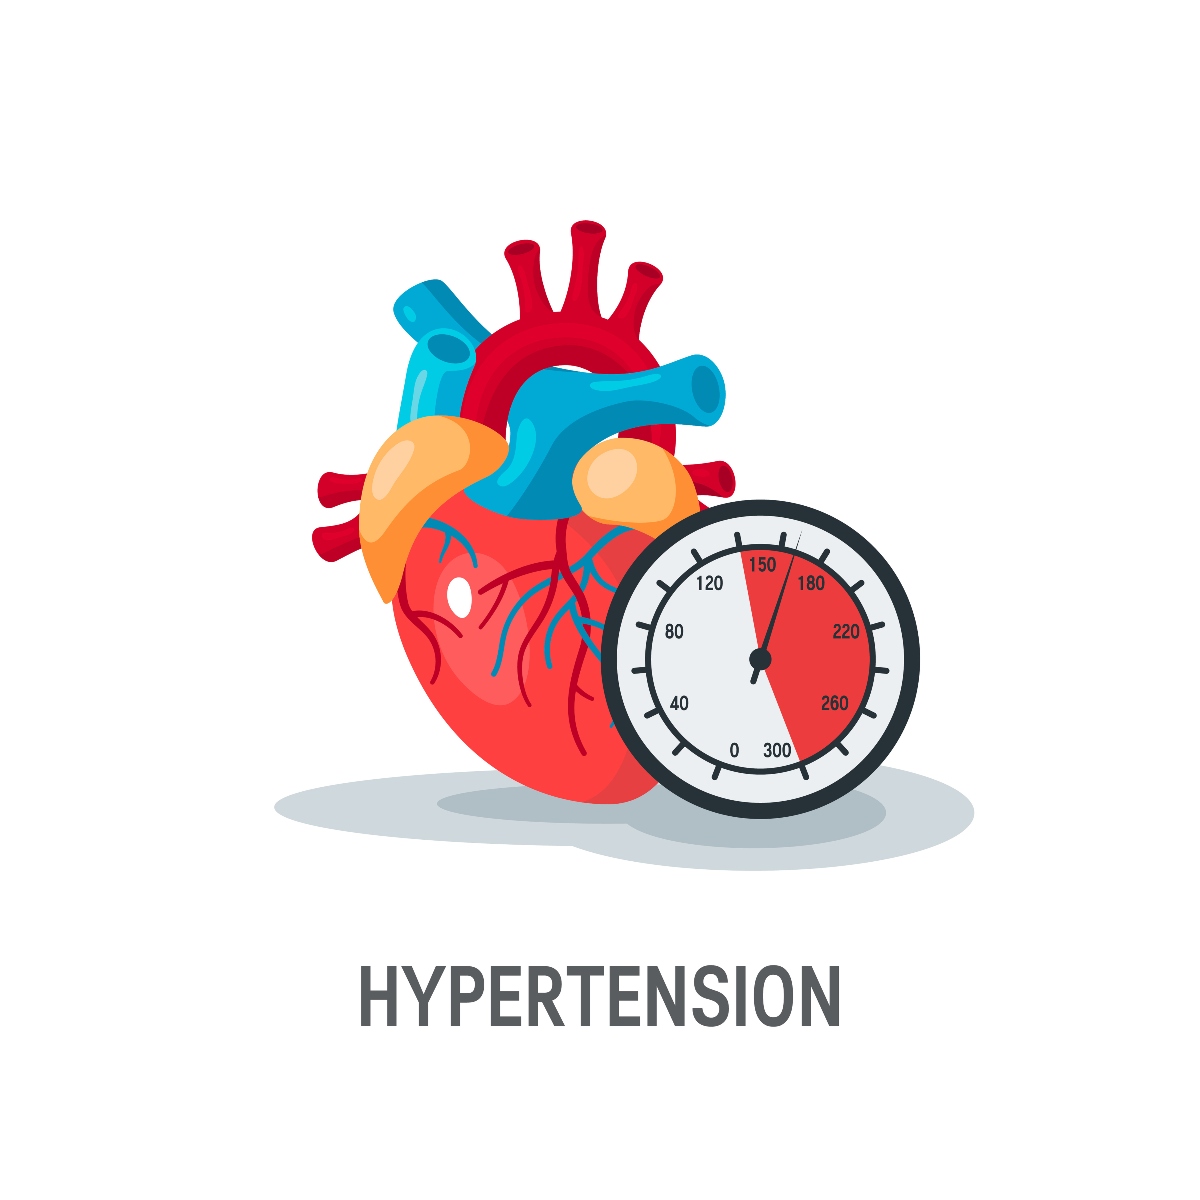 ipertensione: che cos'è 